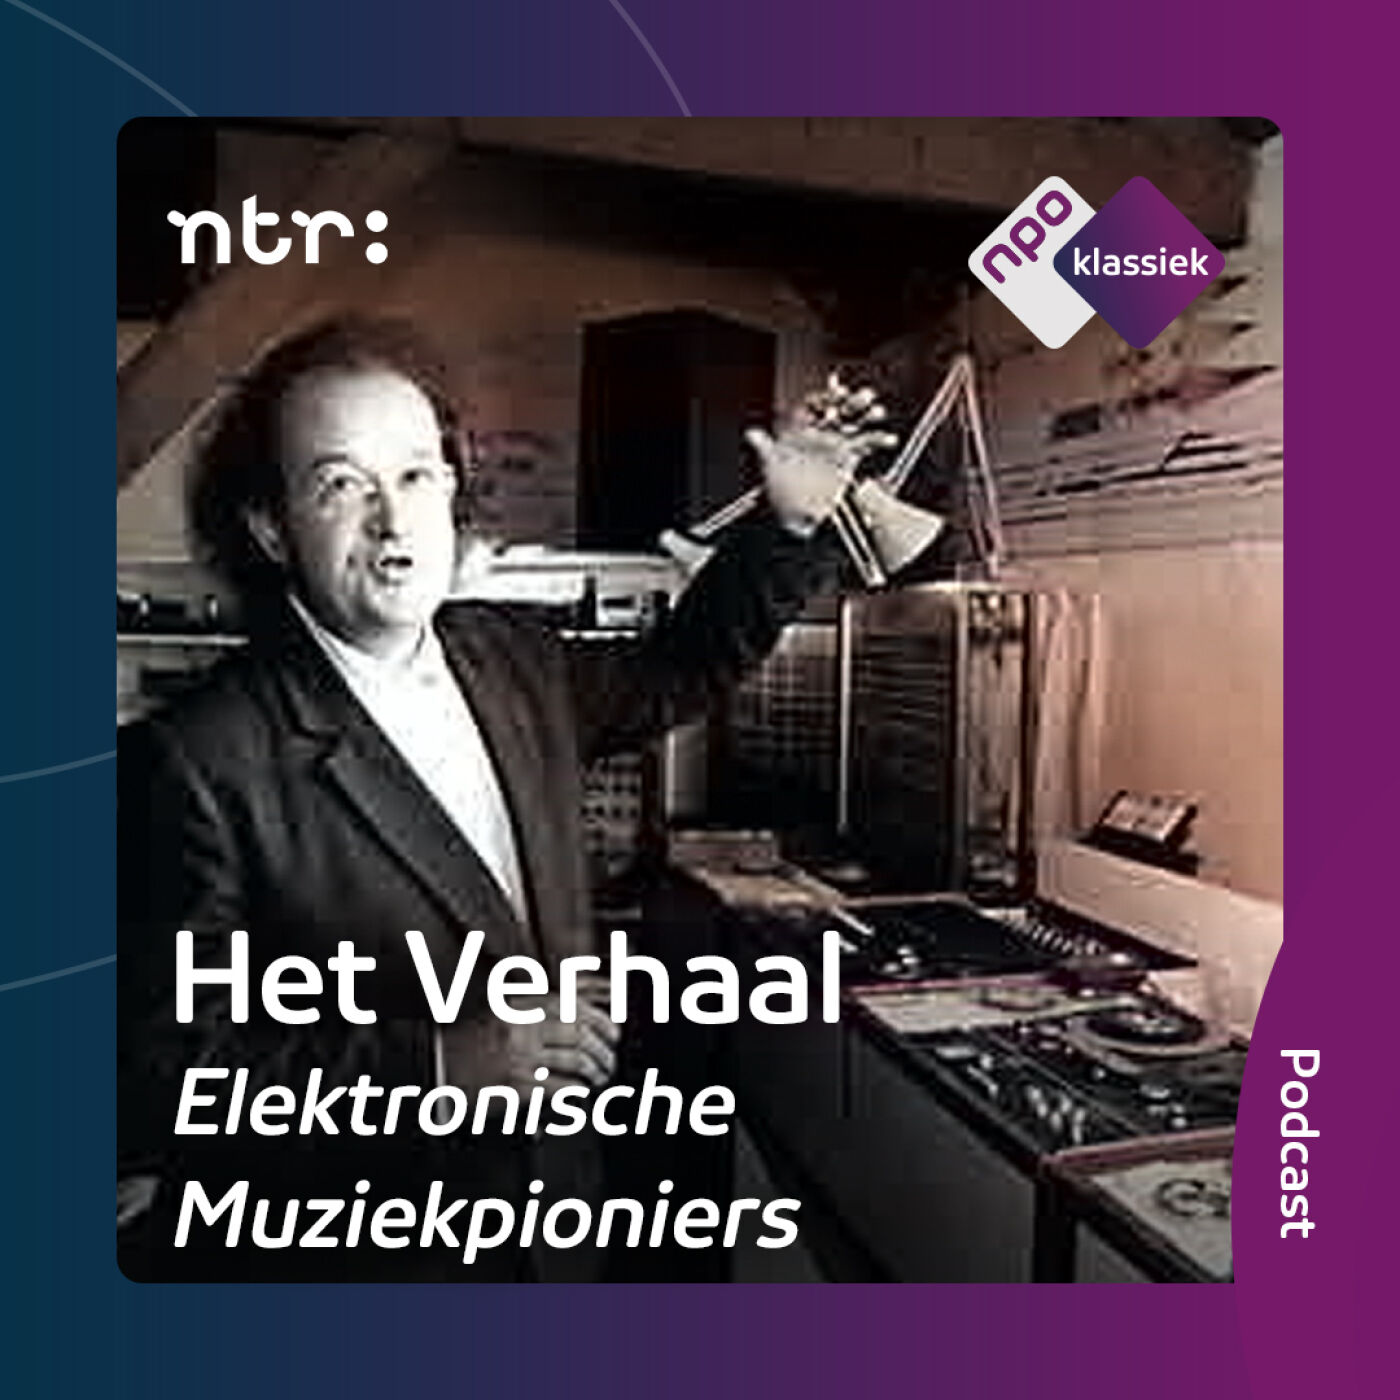 #8 - Elektronische Muziekpioniers | De ‘Kijkende oren’ van Ton Bruynèl (deel 3) (S06)